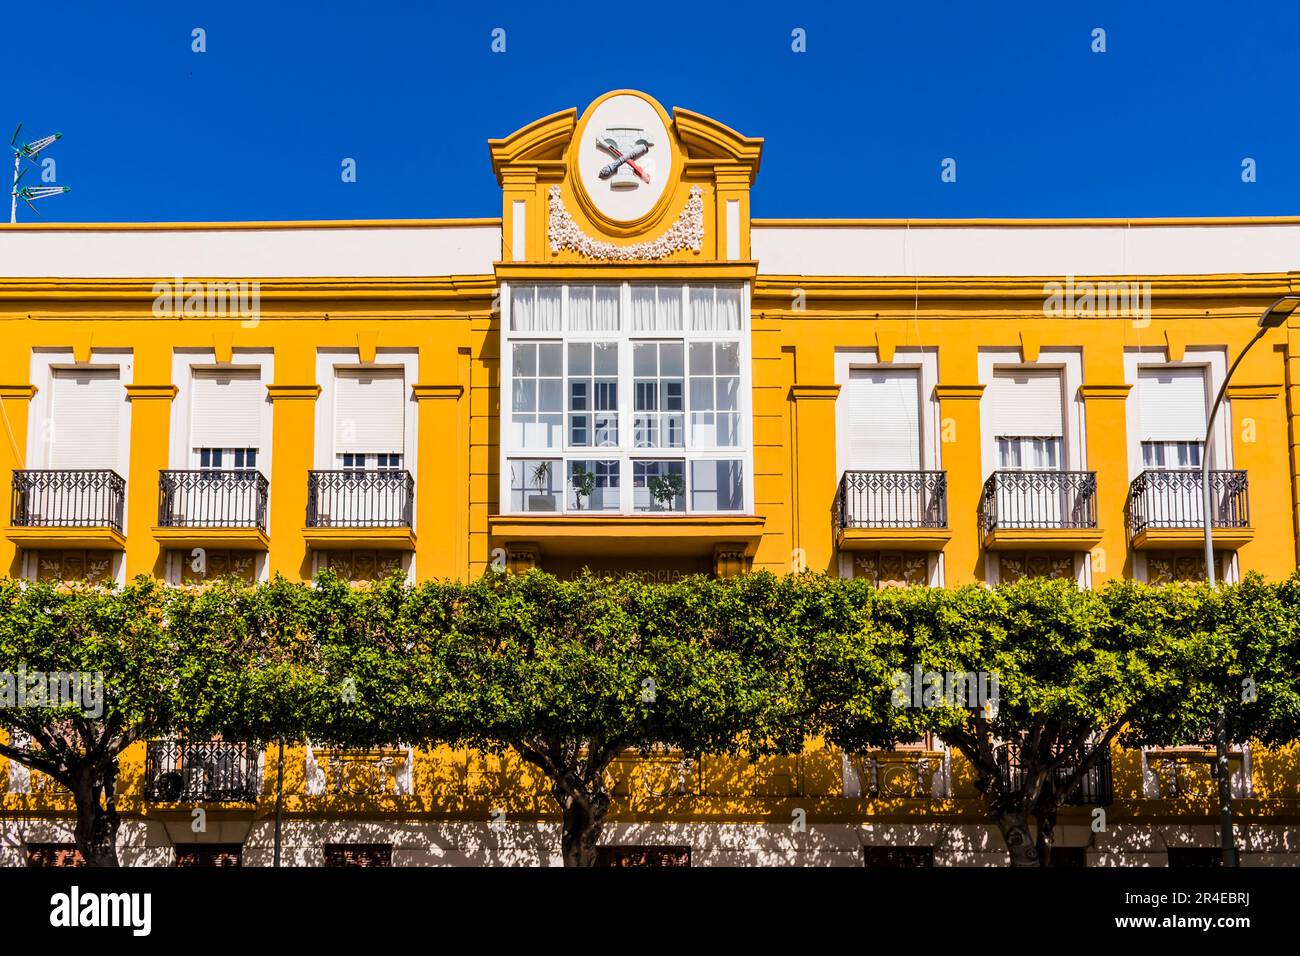 El Edificio de la Comandancia de Ingenieros - Edificio de la Comandancia de Ingenieros es un edificio ecléctico, sede del Comando de Obras de Melilla. Modernis Foto de stock